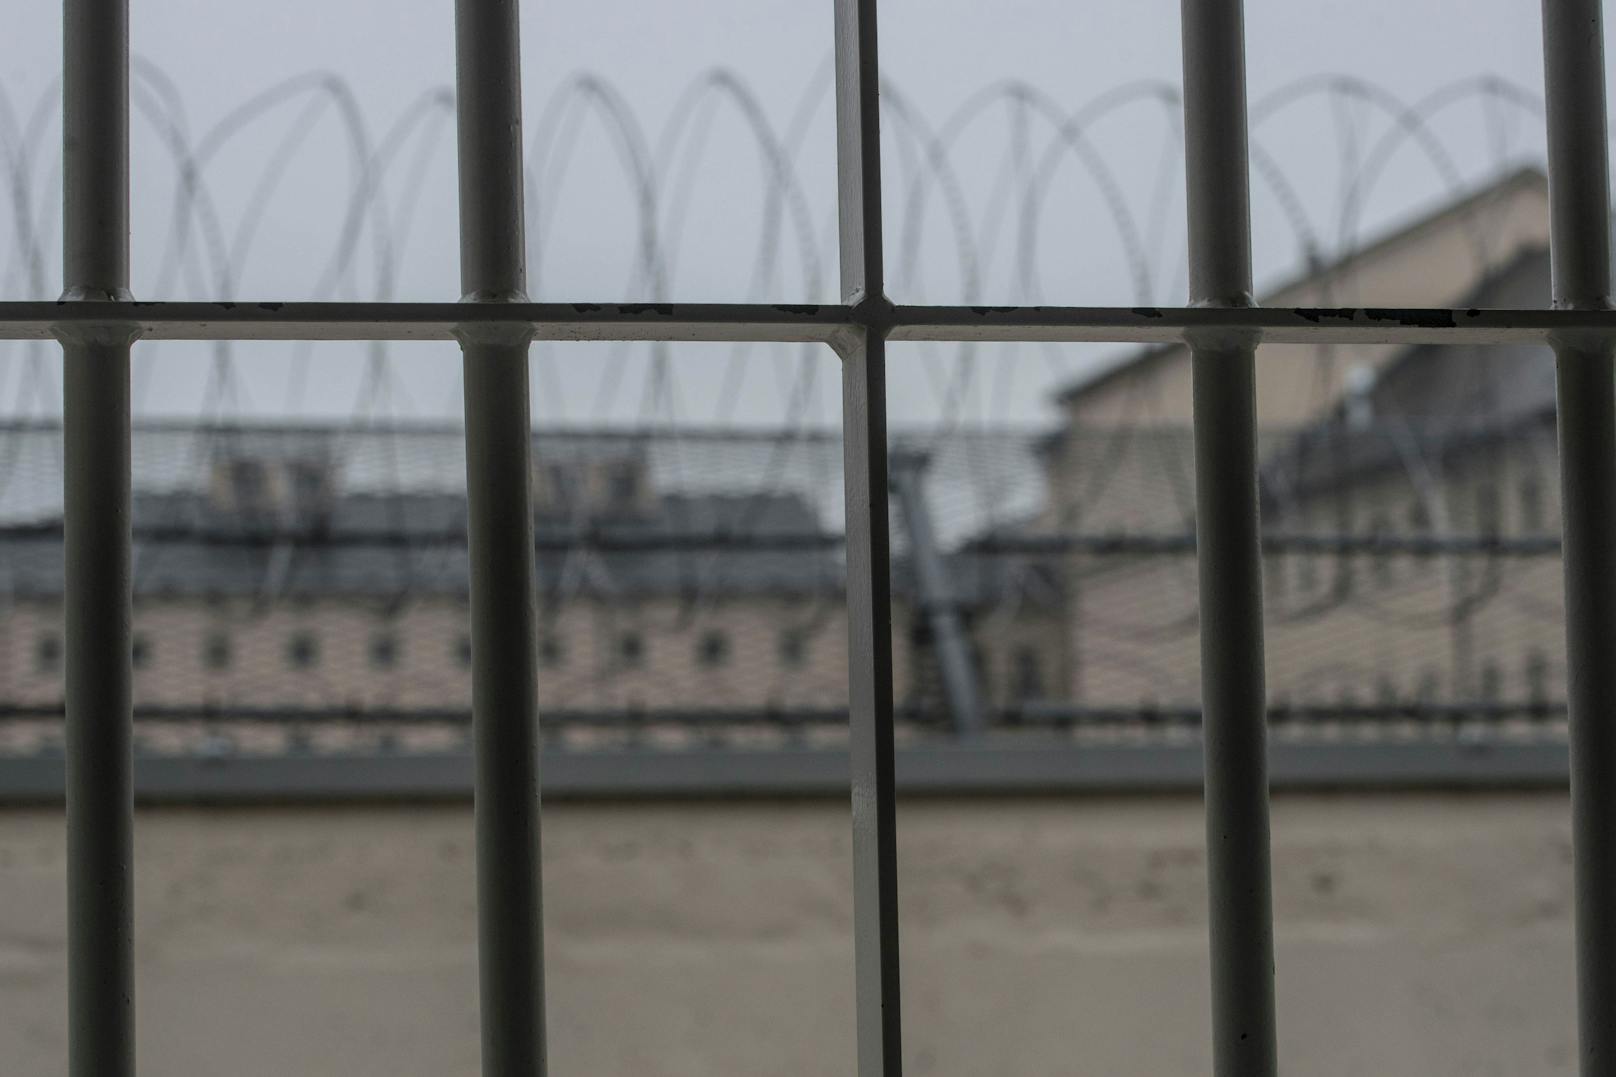 Immer mehr Menschen in Österreich müssen wegen nicht bezahlter Verwaltungsstrafen ins Gefängnis